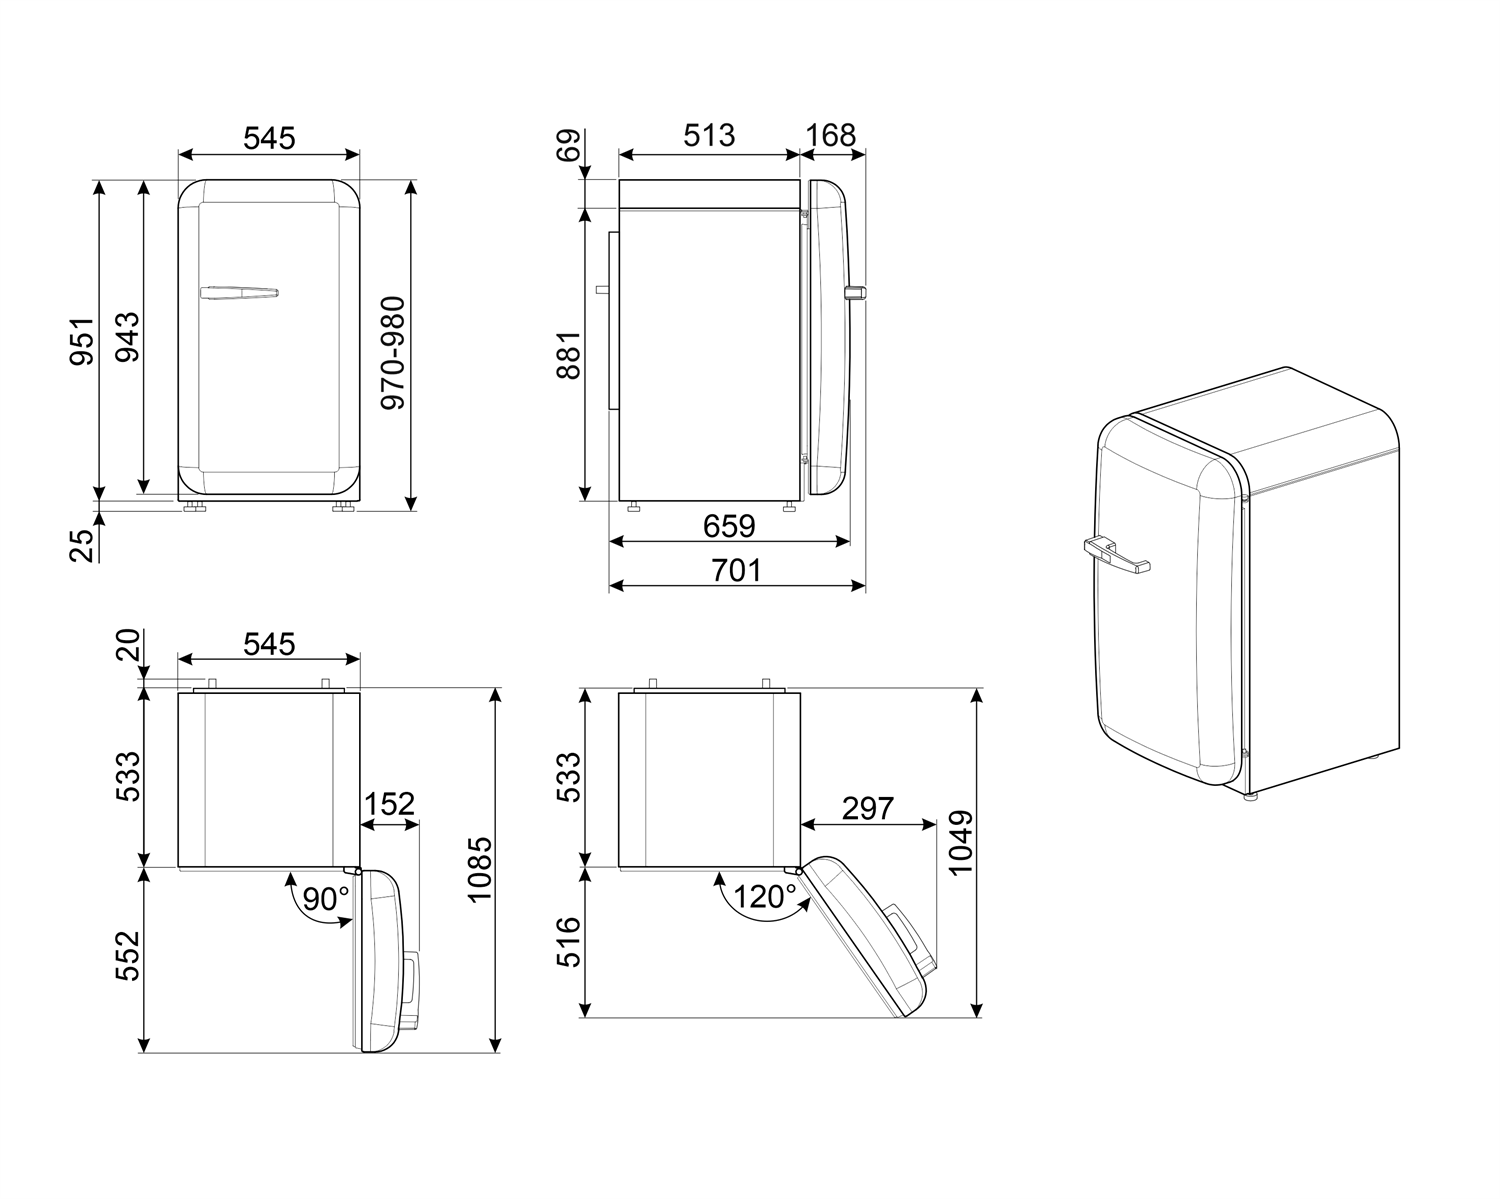 Maattekening SMEG koelkast tafelmodel wit FAB10RWH5